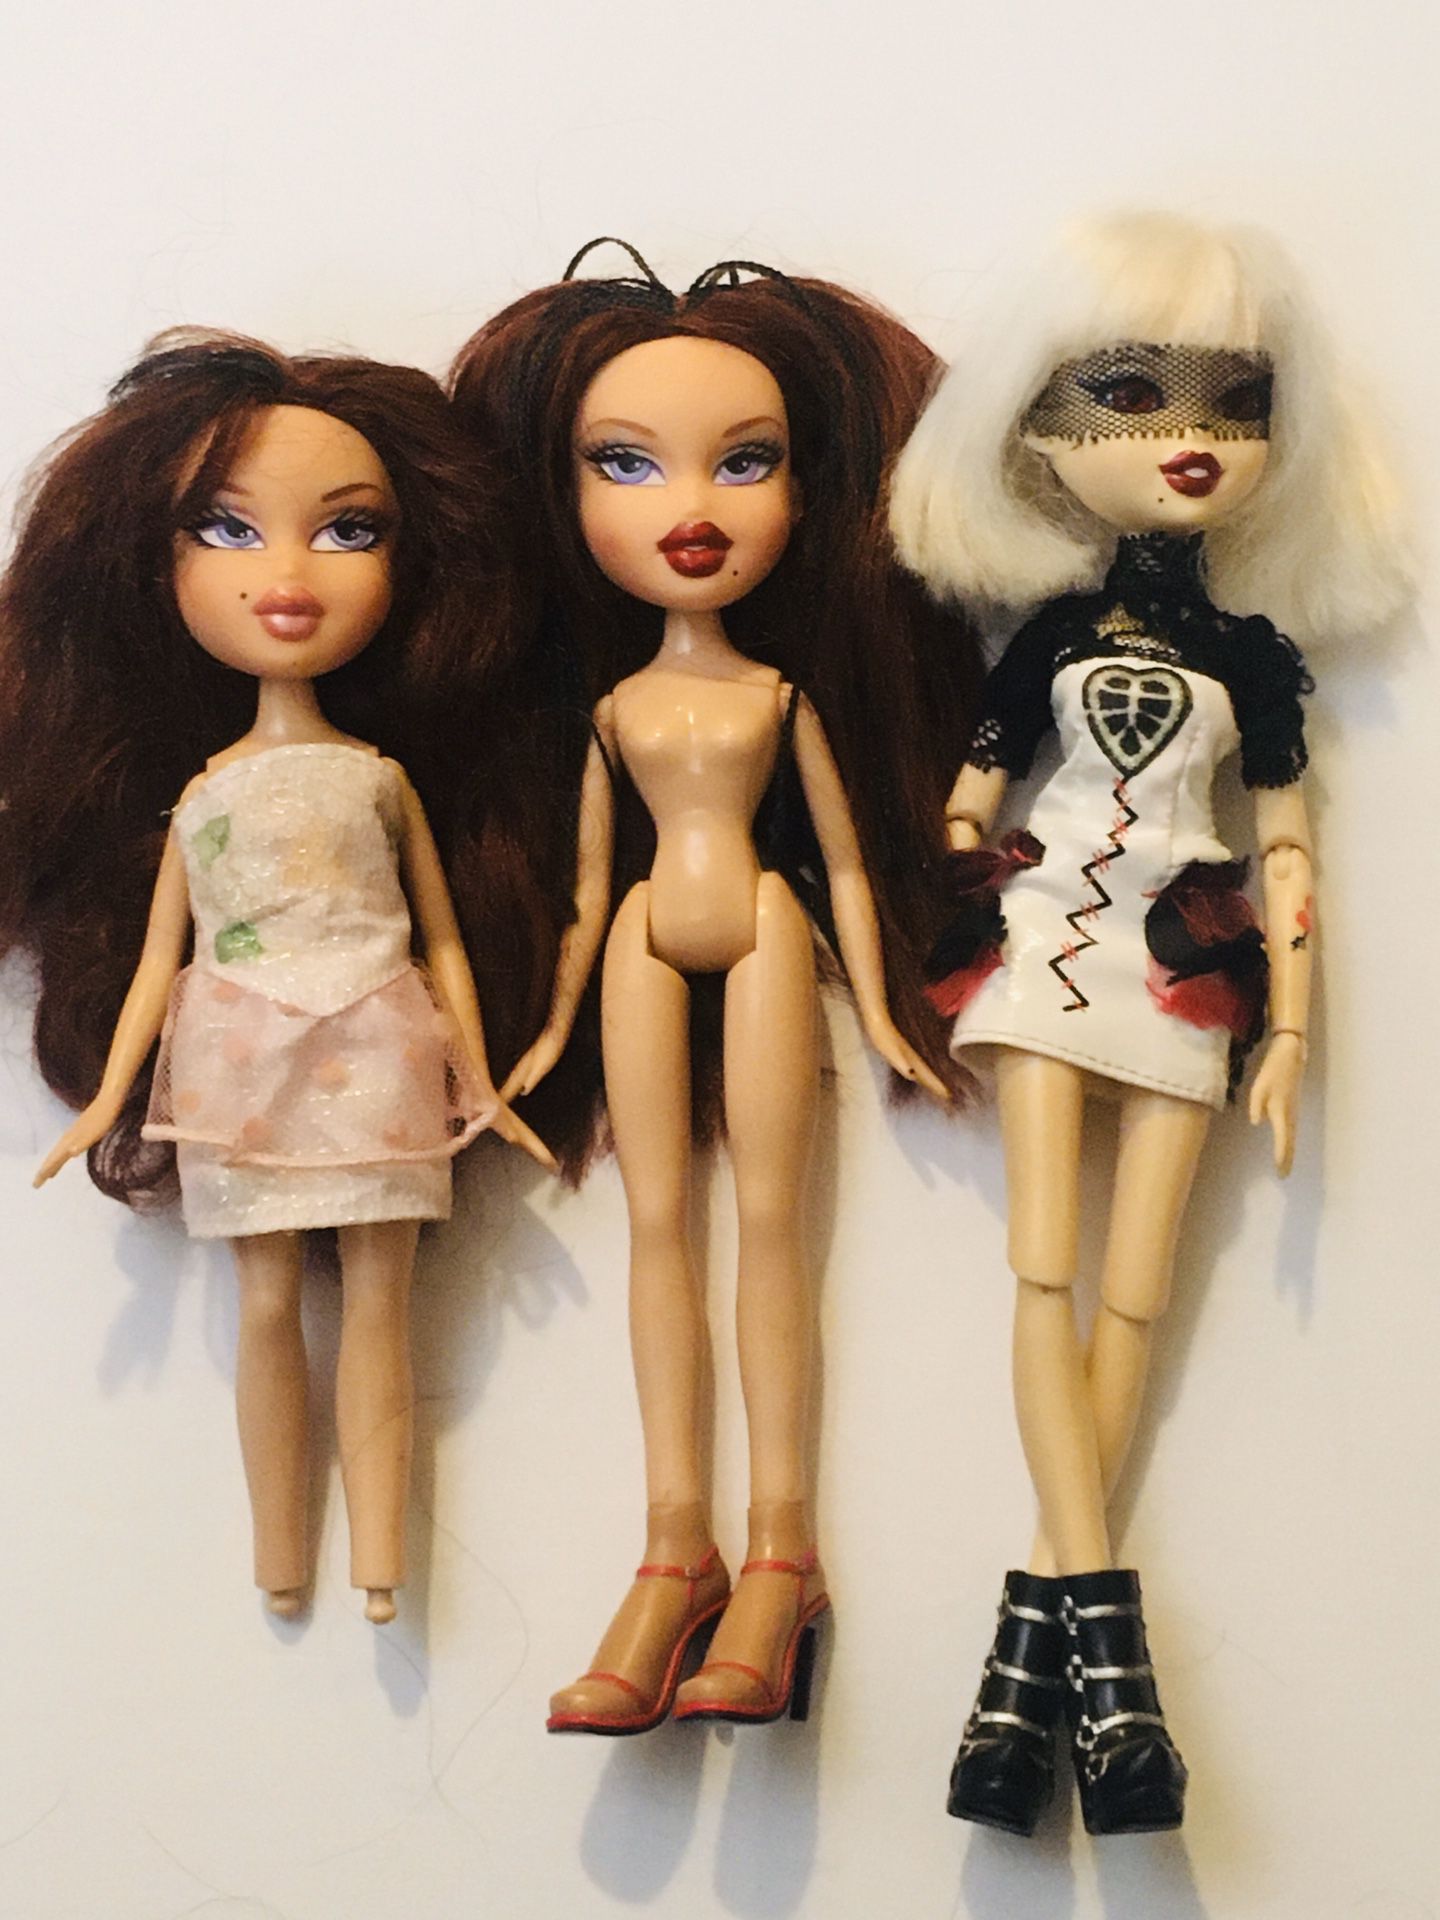 Bratz dolls